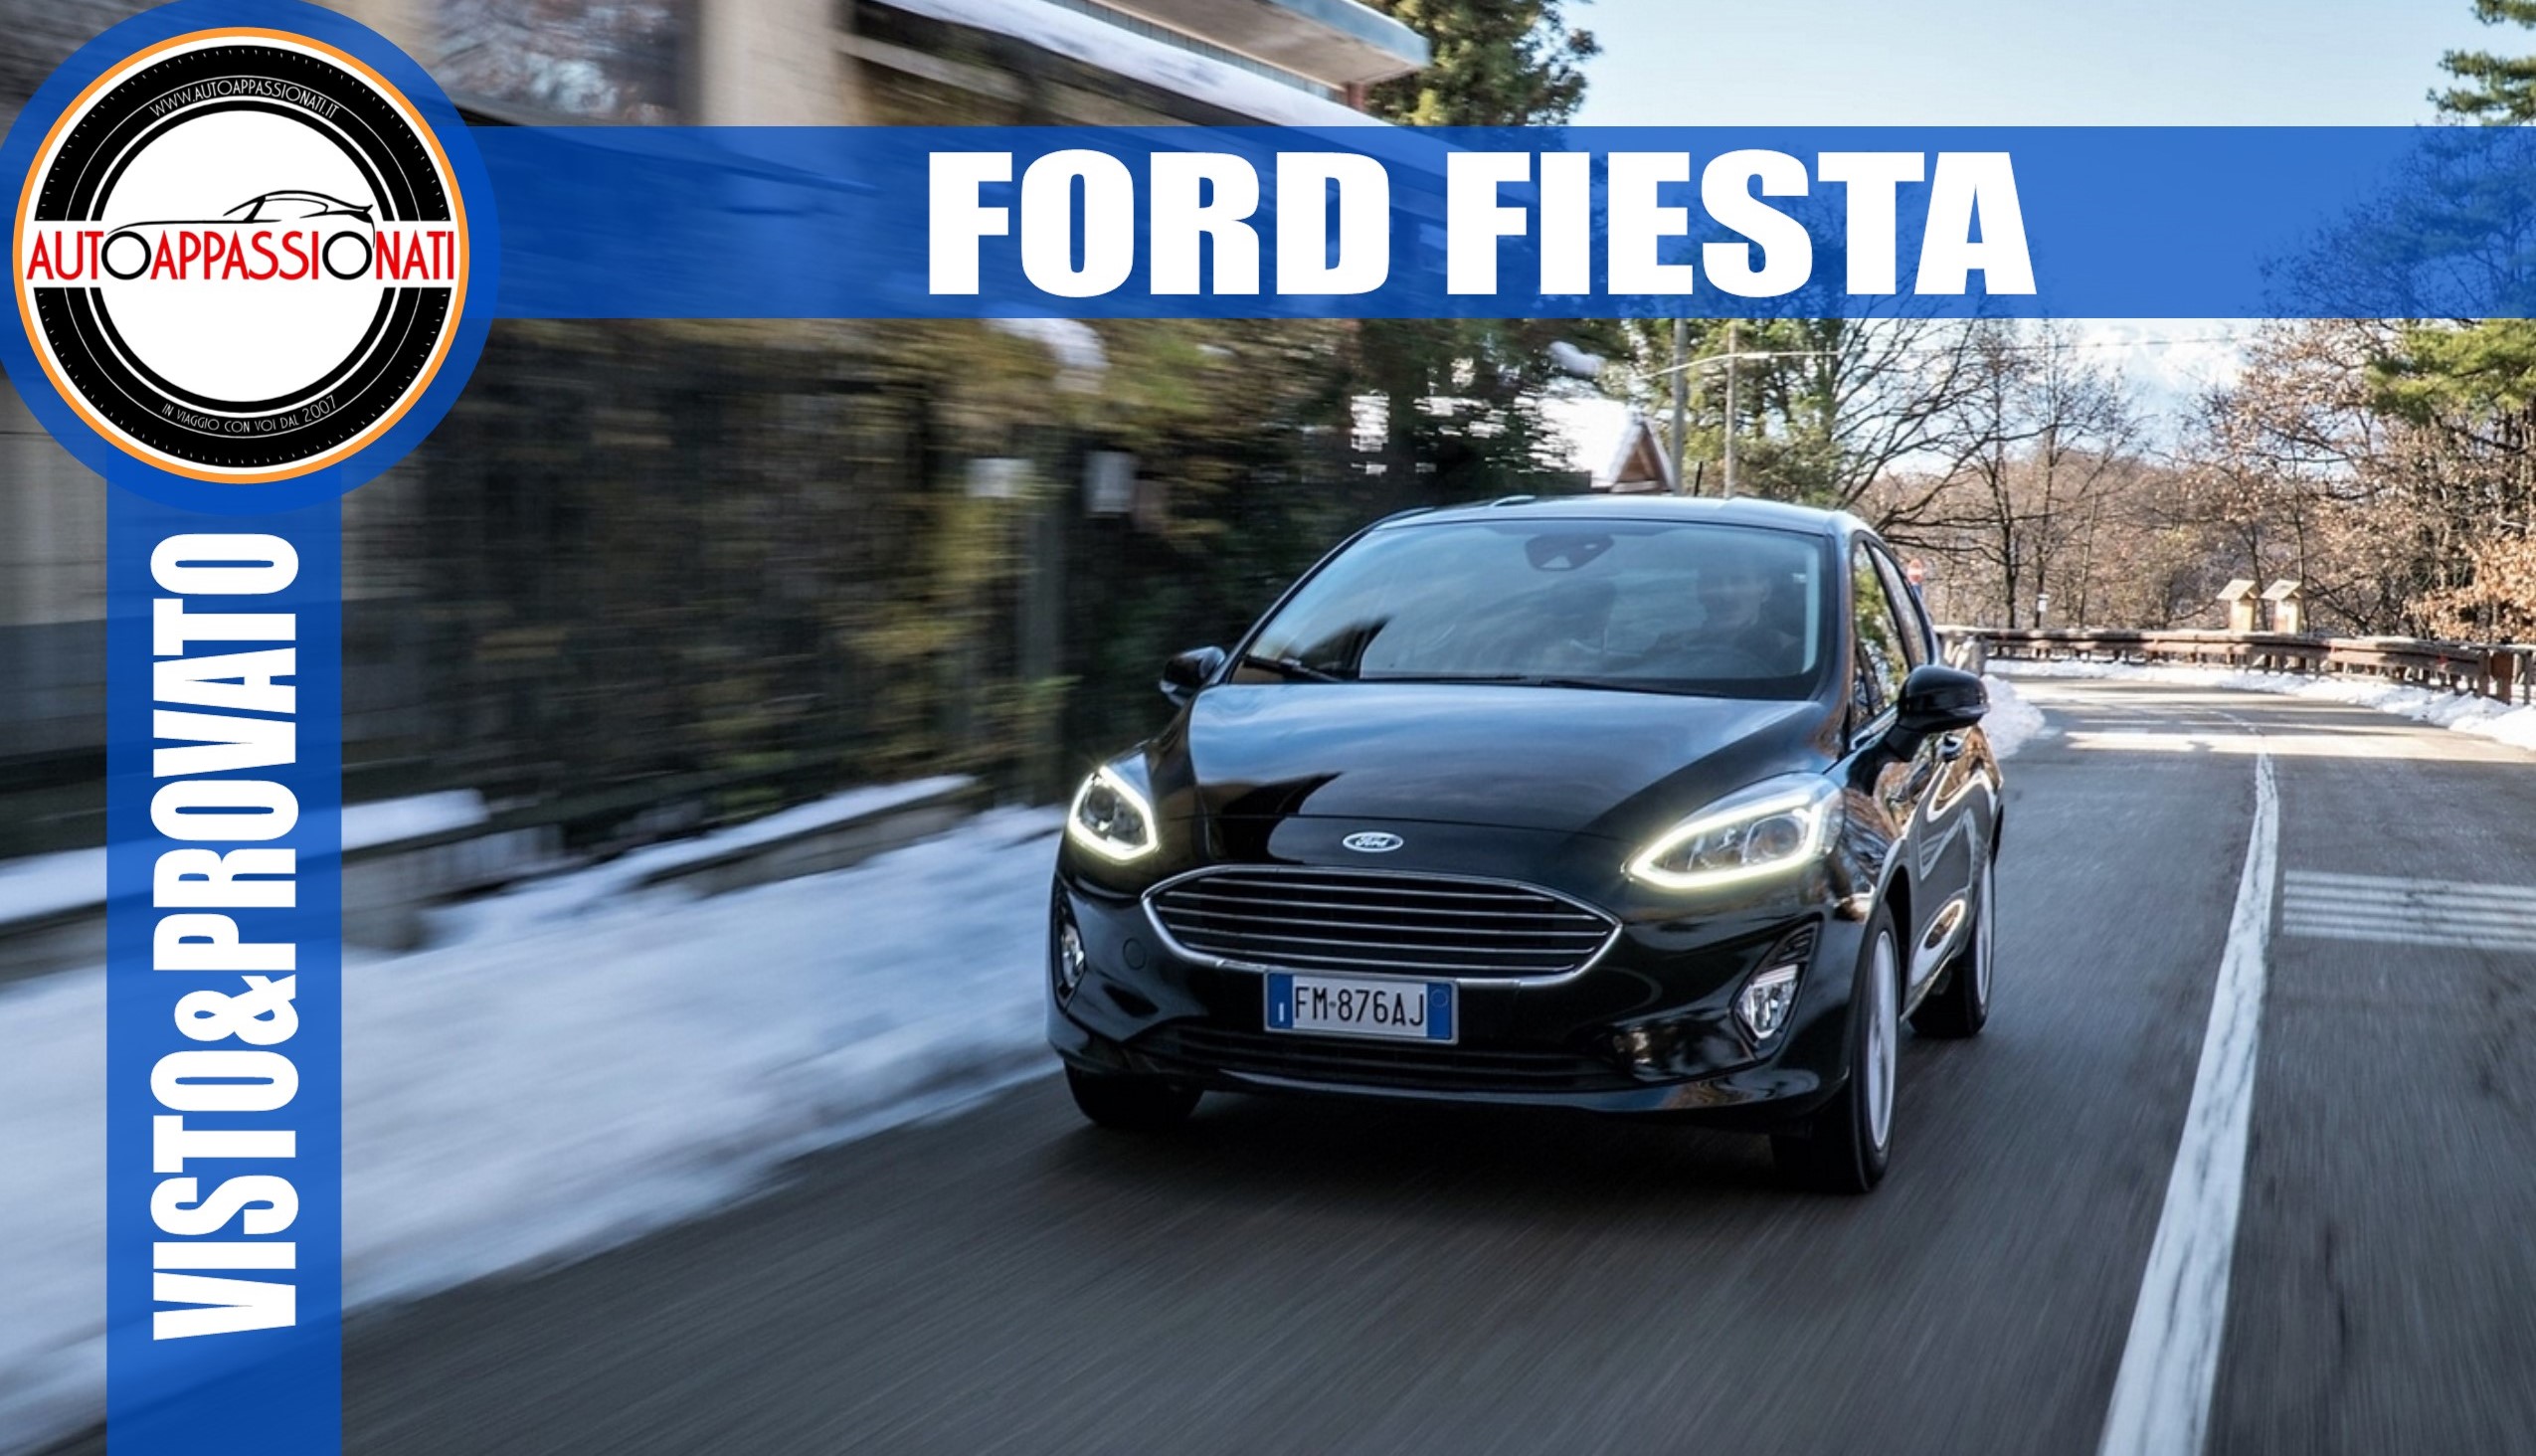 Ford Fiesta Visto & Provato